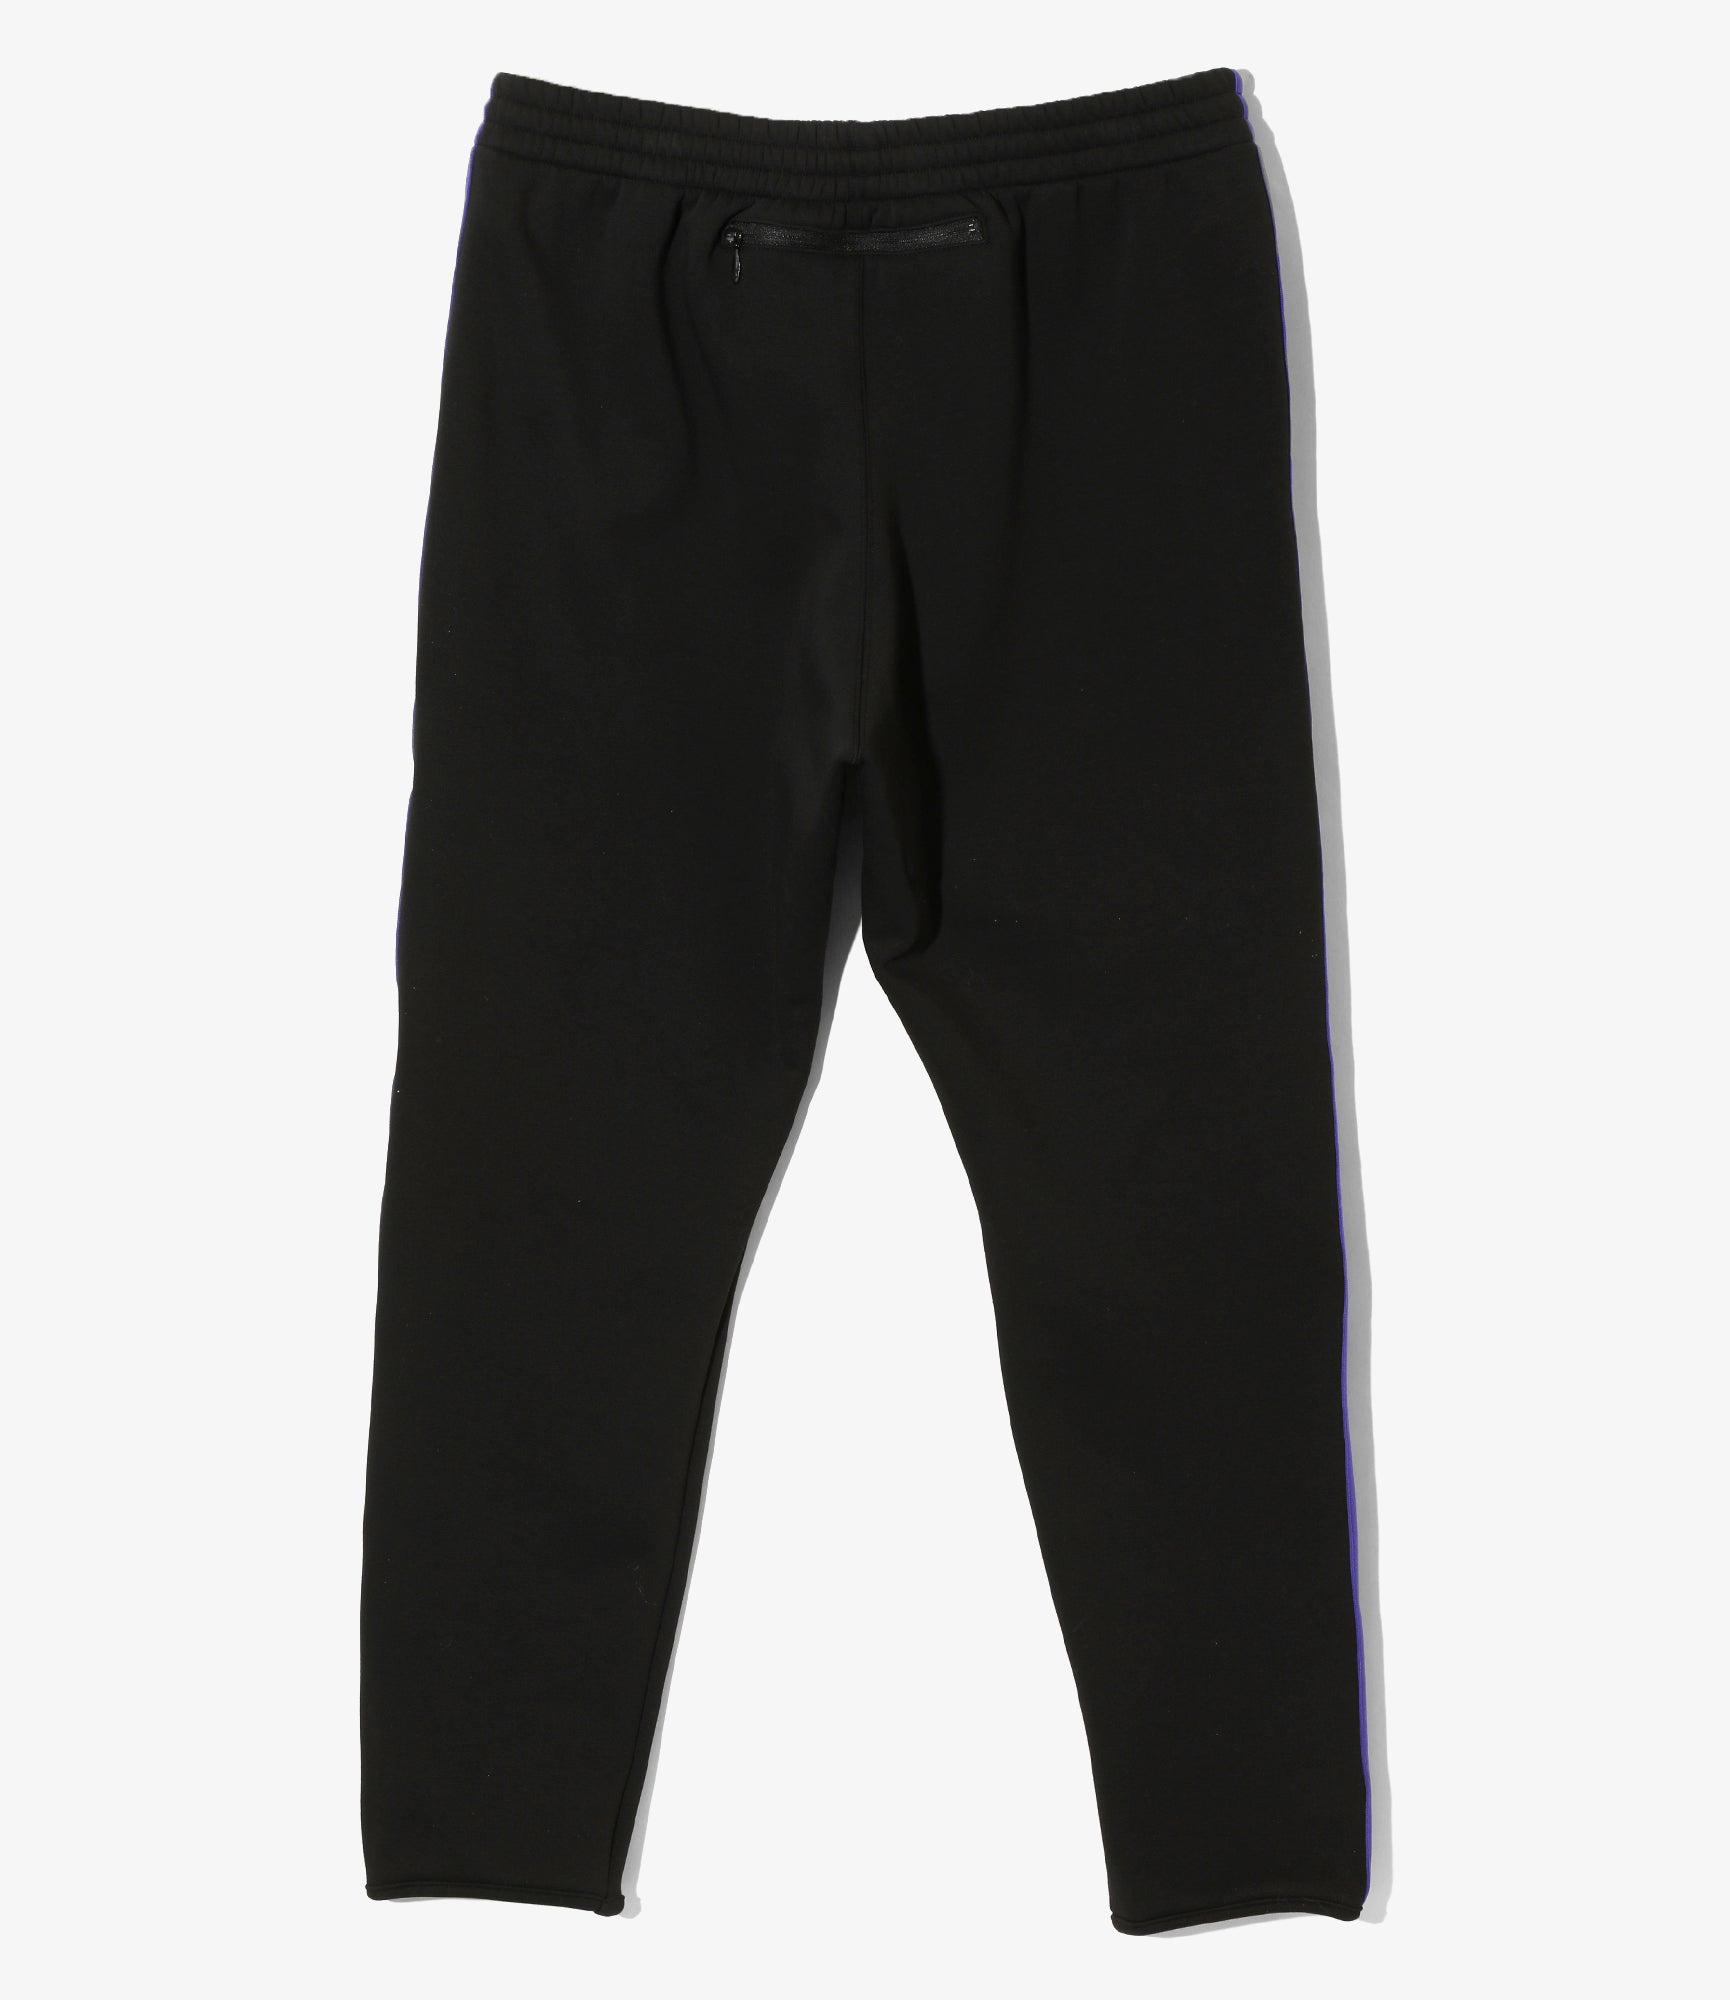 Trainer Pant - Black - PE/C/PU Fleece Lined Jersey